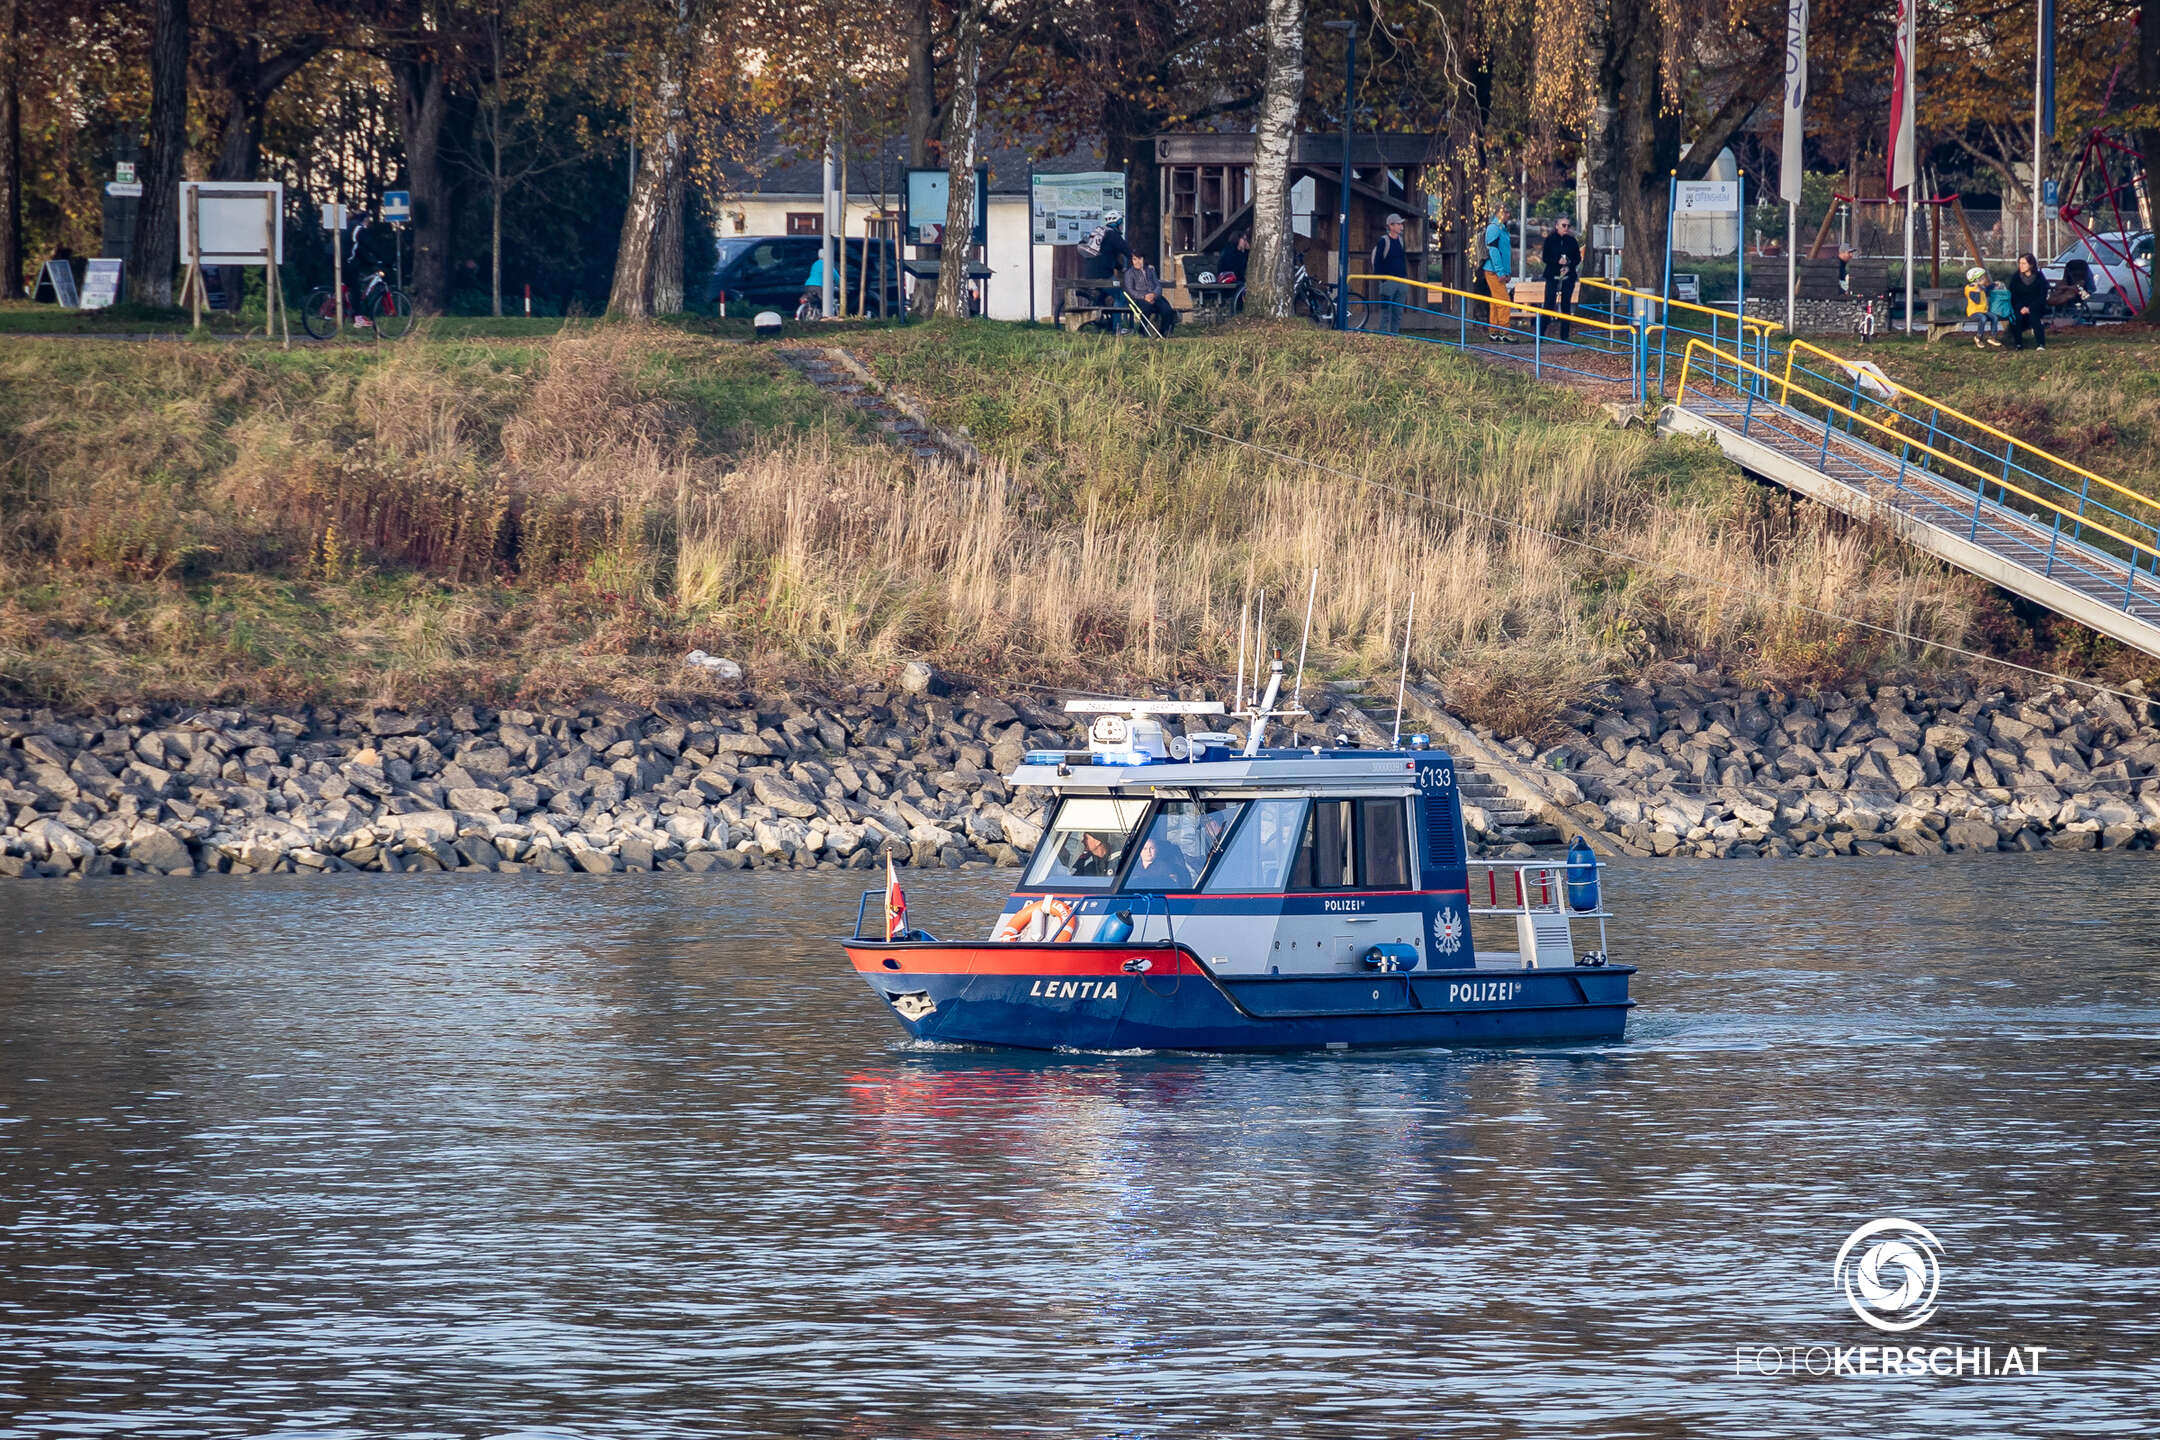 Drachenboot auf der Donau gekentert